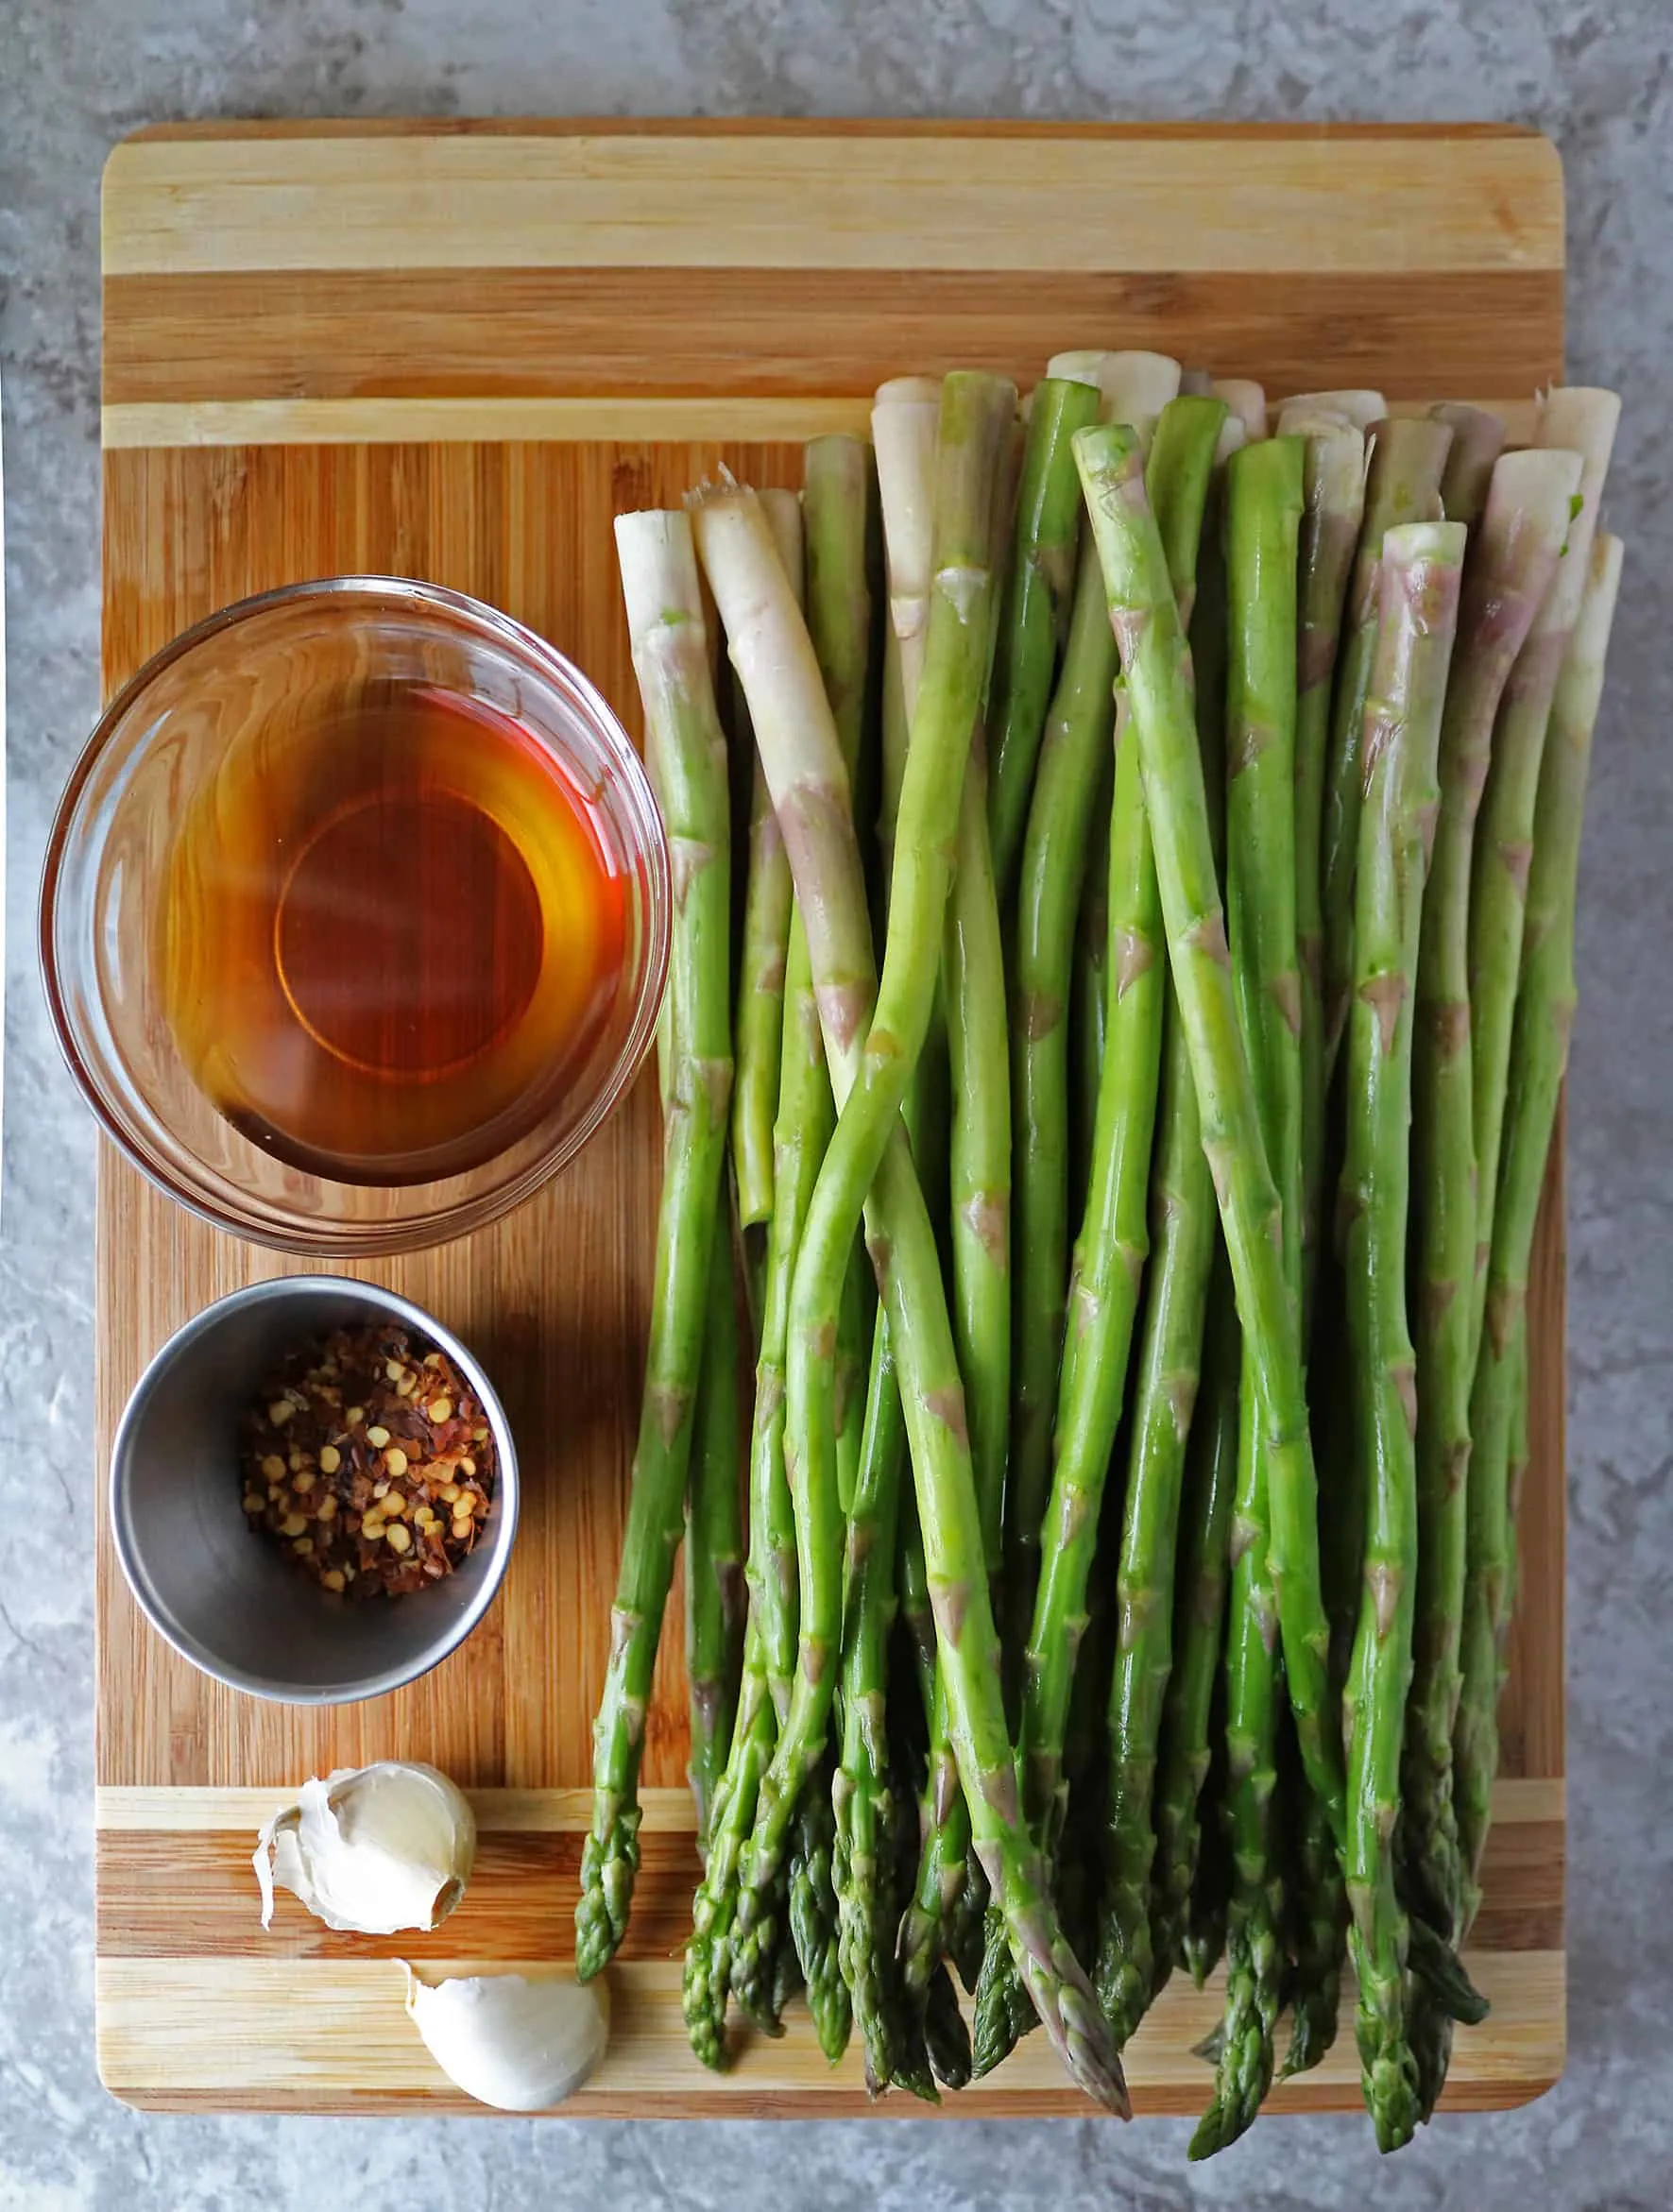 Ingredients to make Garlic asparagus